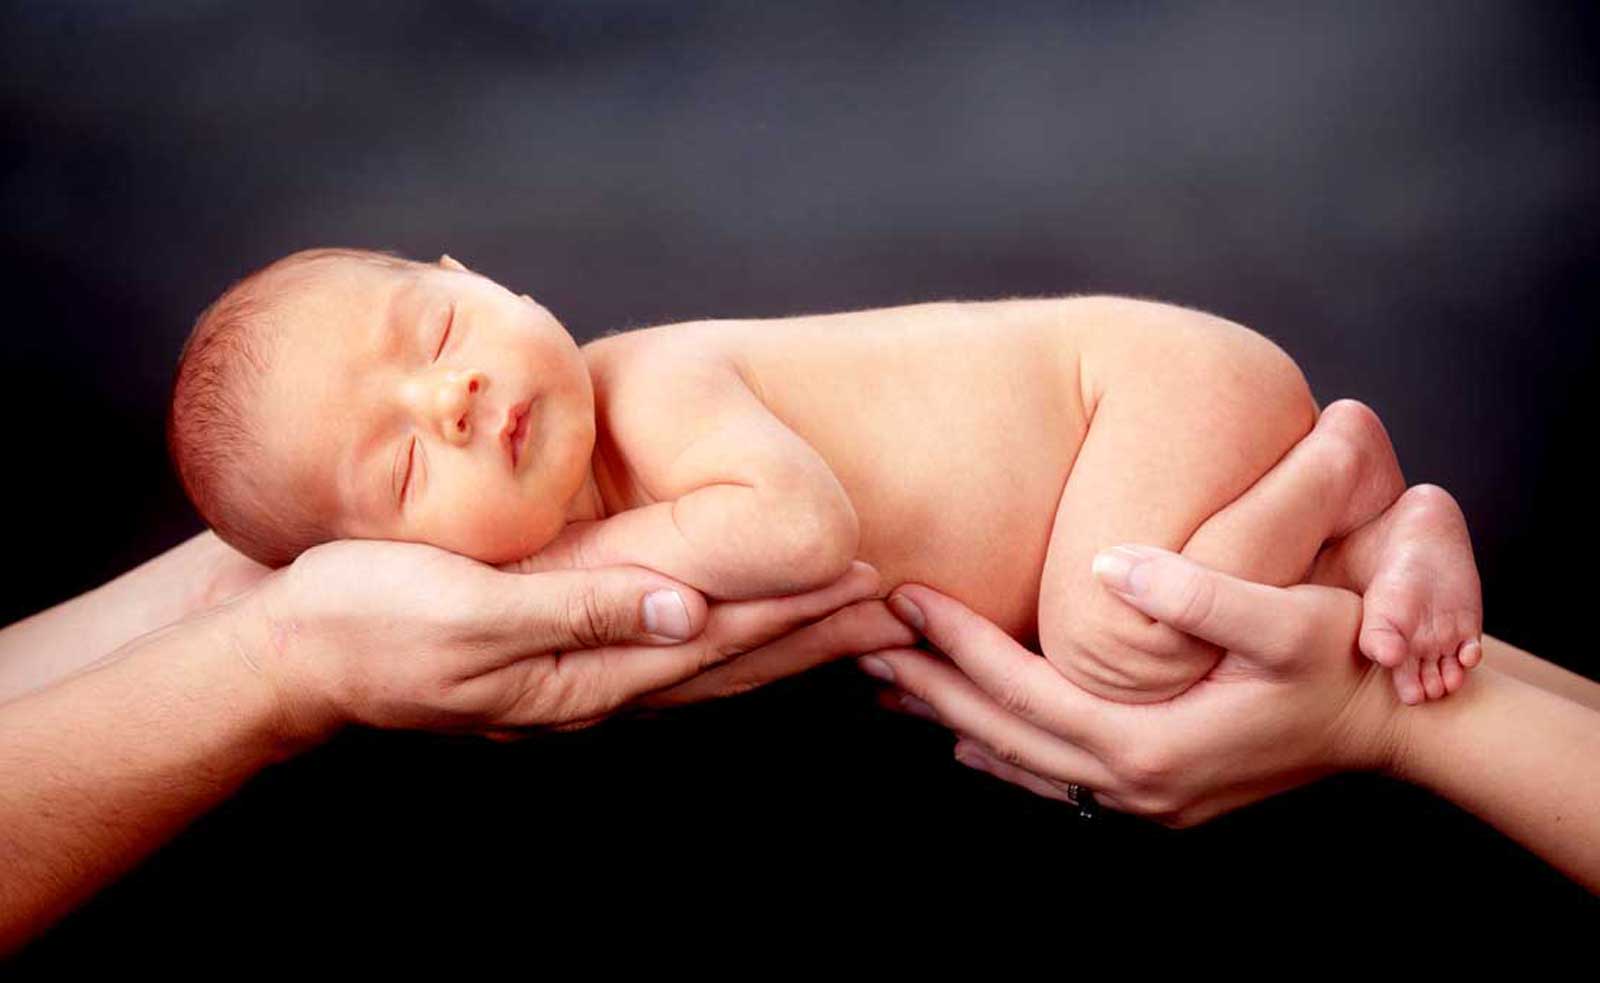 clinica internacional madre primeriza bebe recien nacido dormido